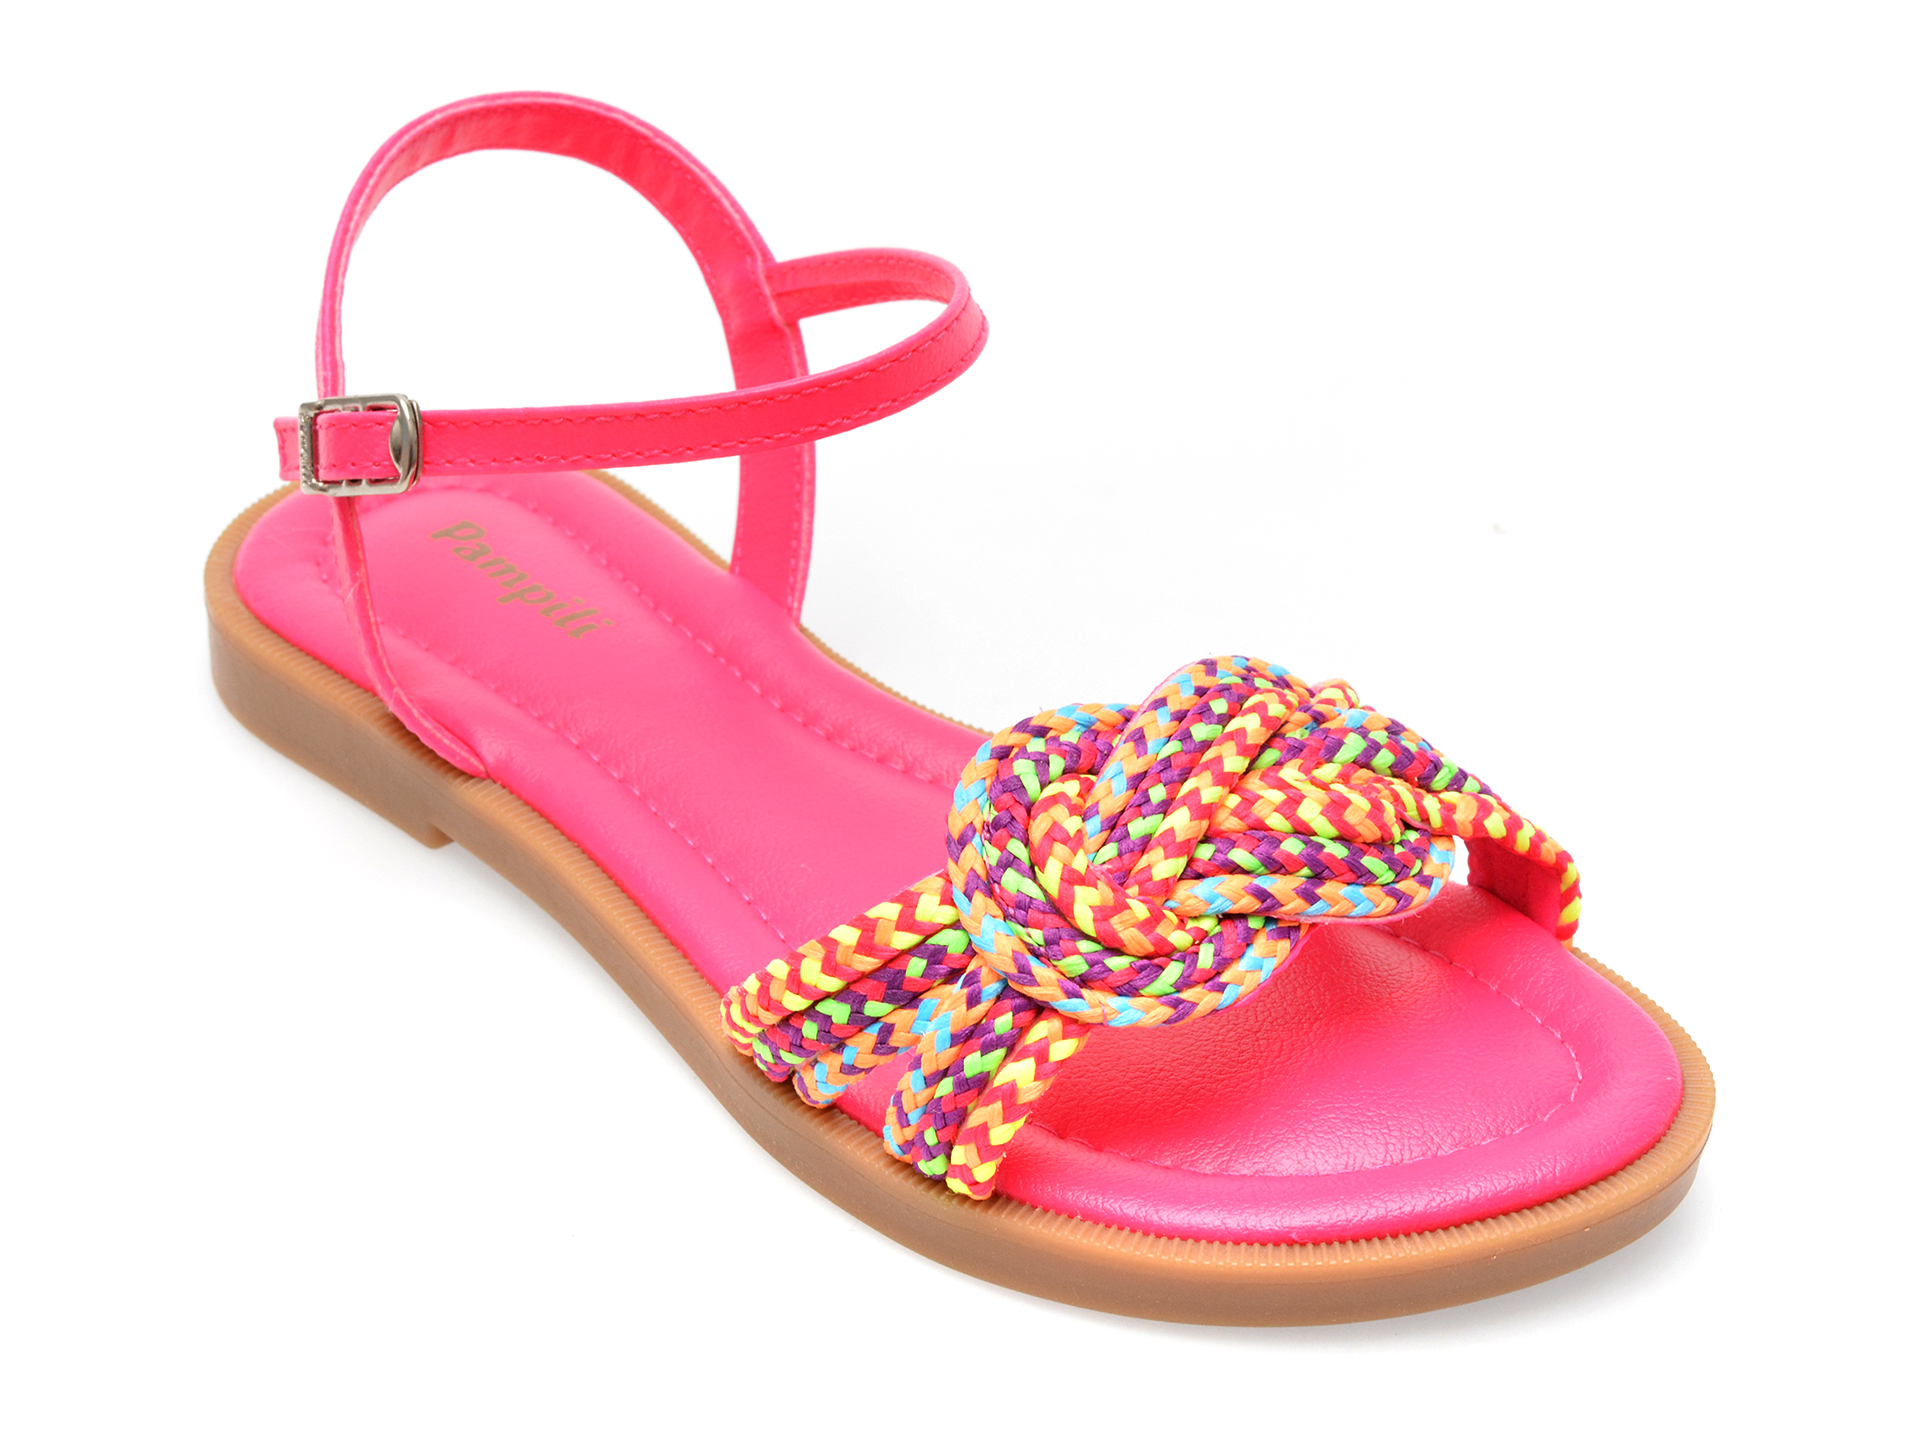 Sandale PAMPILI roz, 696002, din piele ecologica /copii/incaltaminte